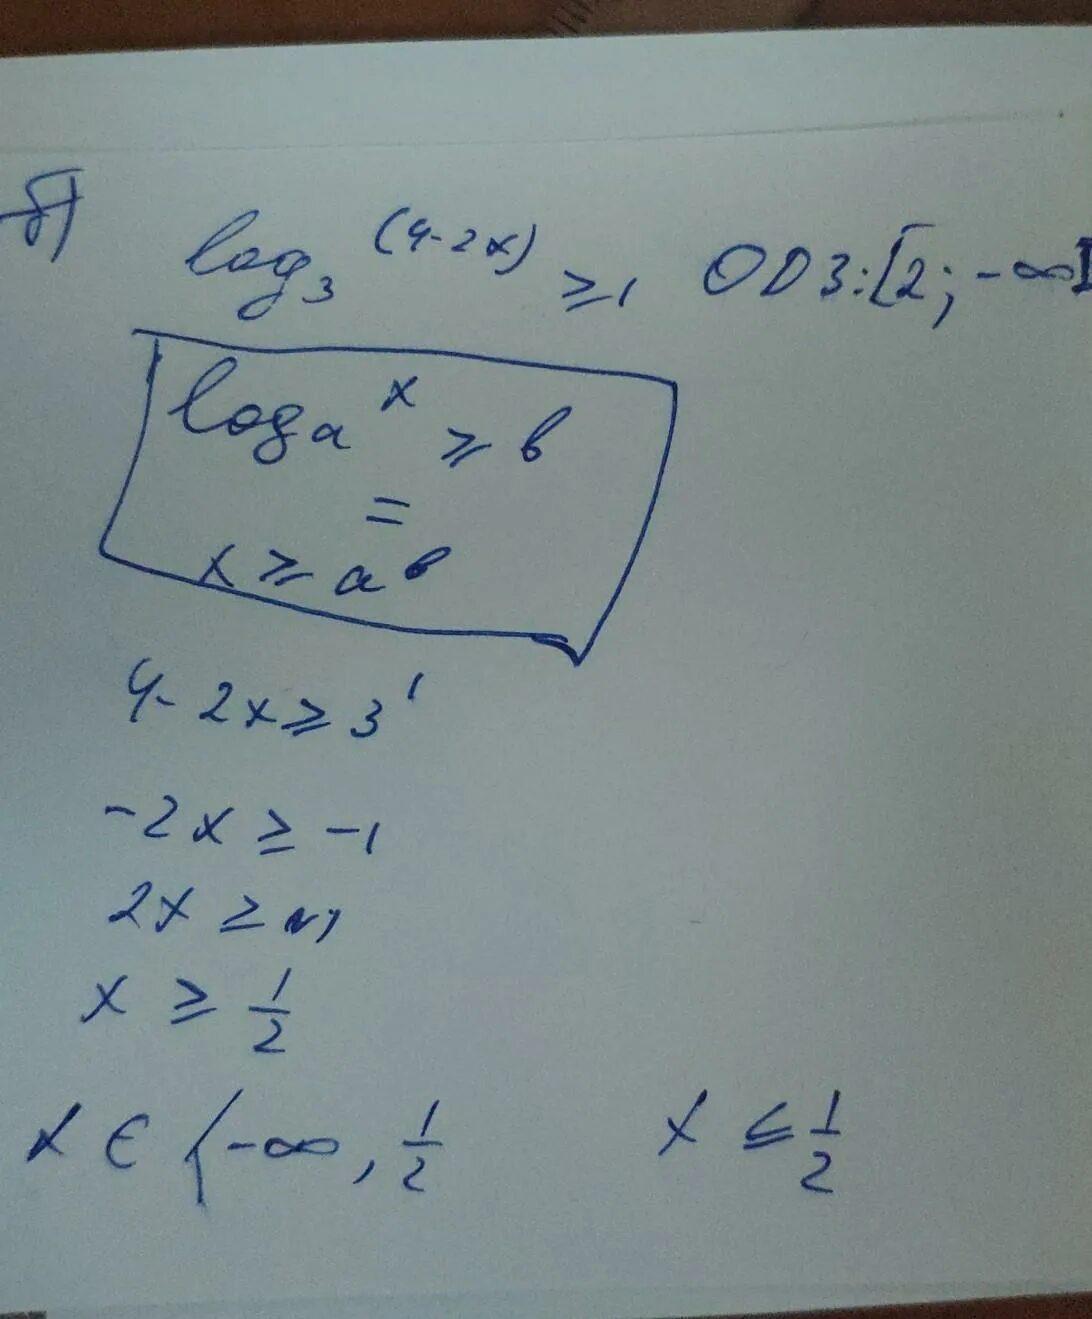 Log2 x больше или равен -2. Log2 x больше или равно 1. Log2(x²-2x)больше или равно 3. Log1 3 x-1 больше или равно log1/3.